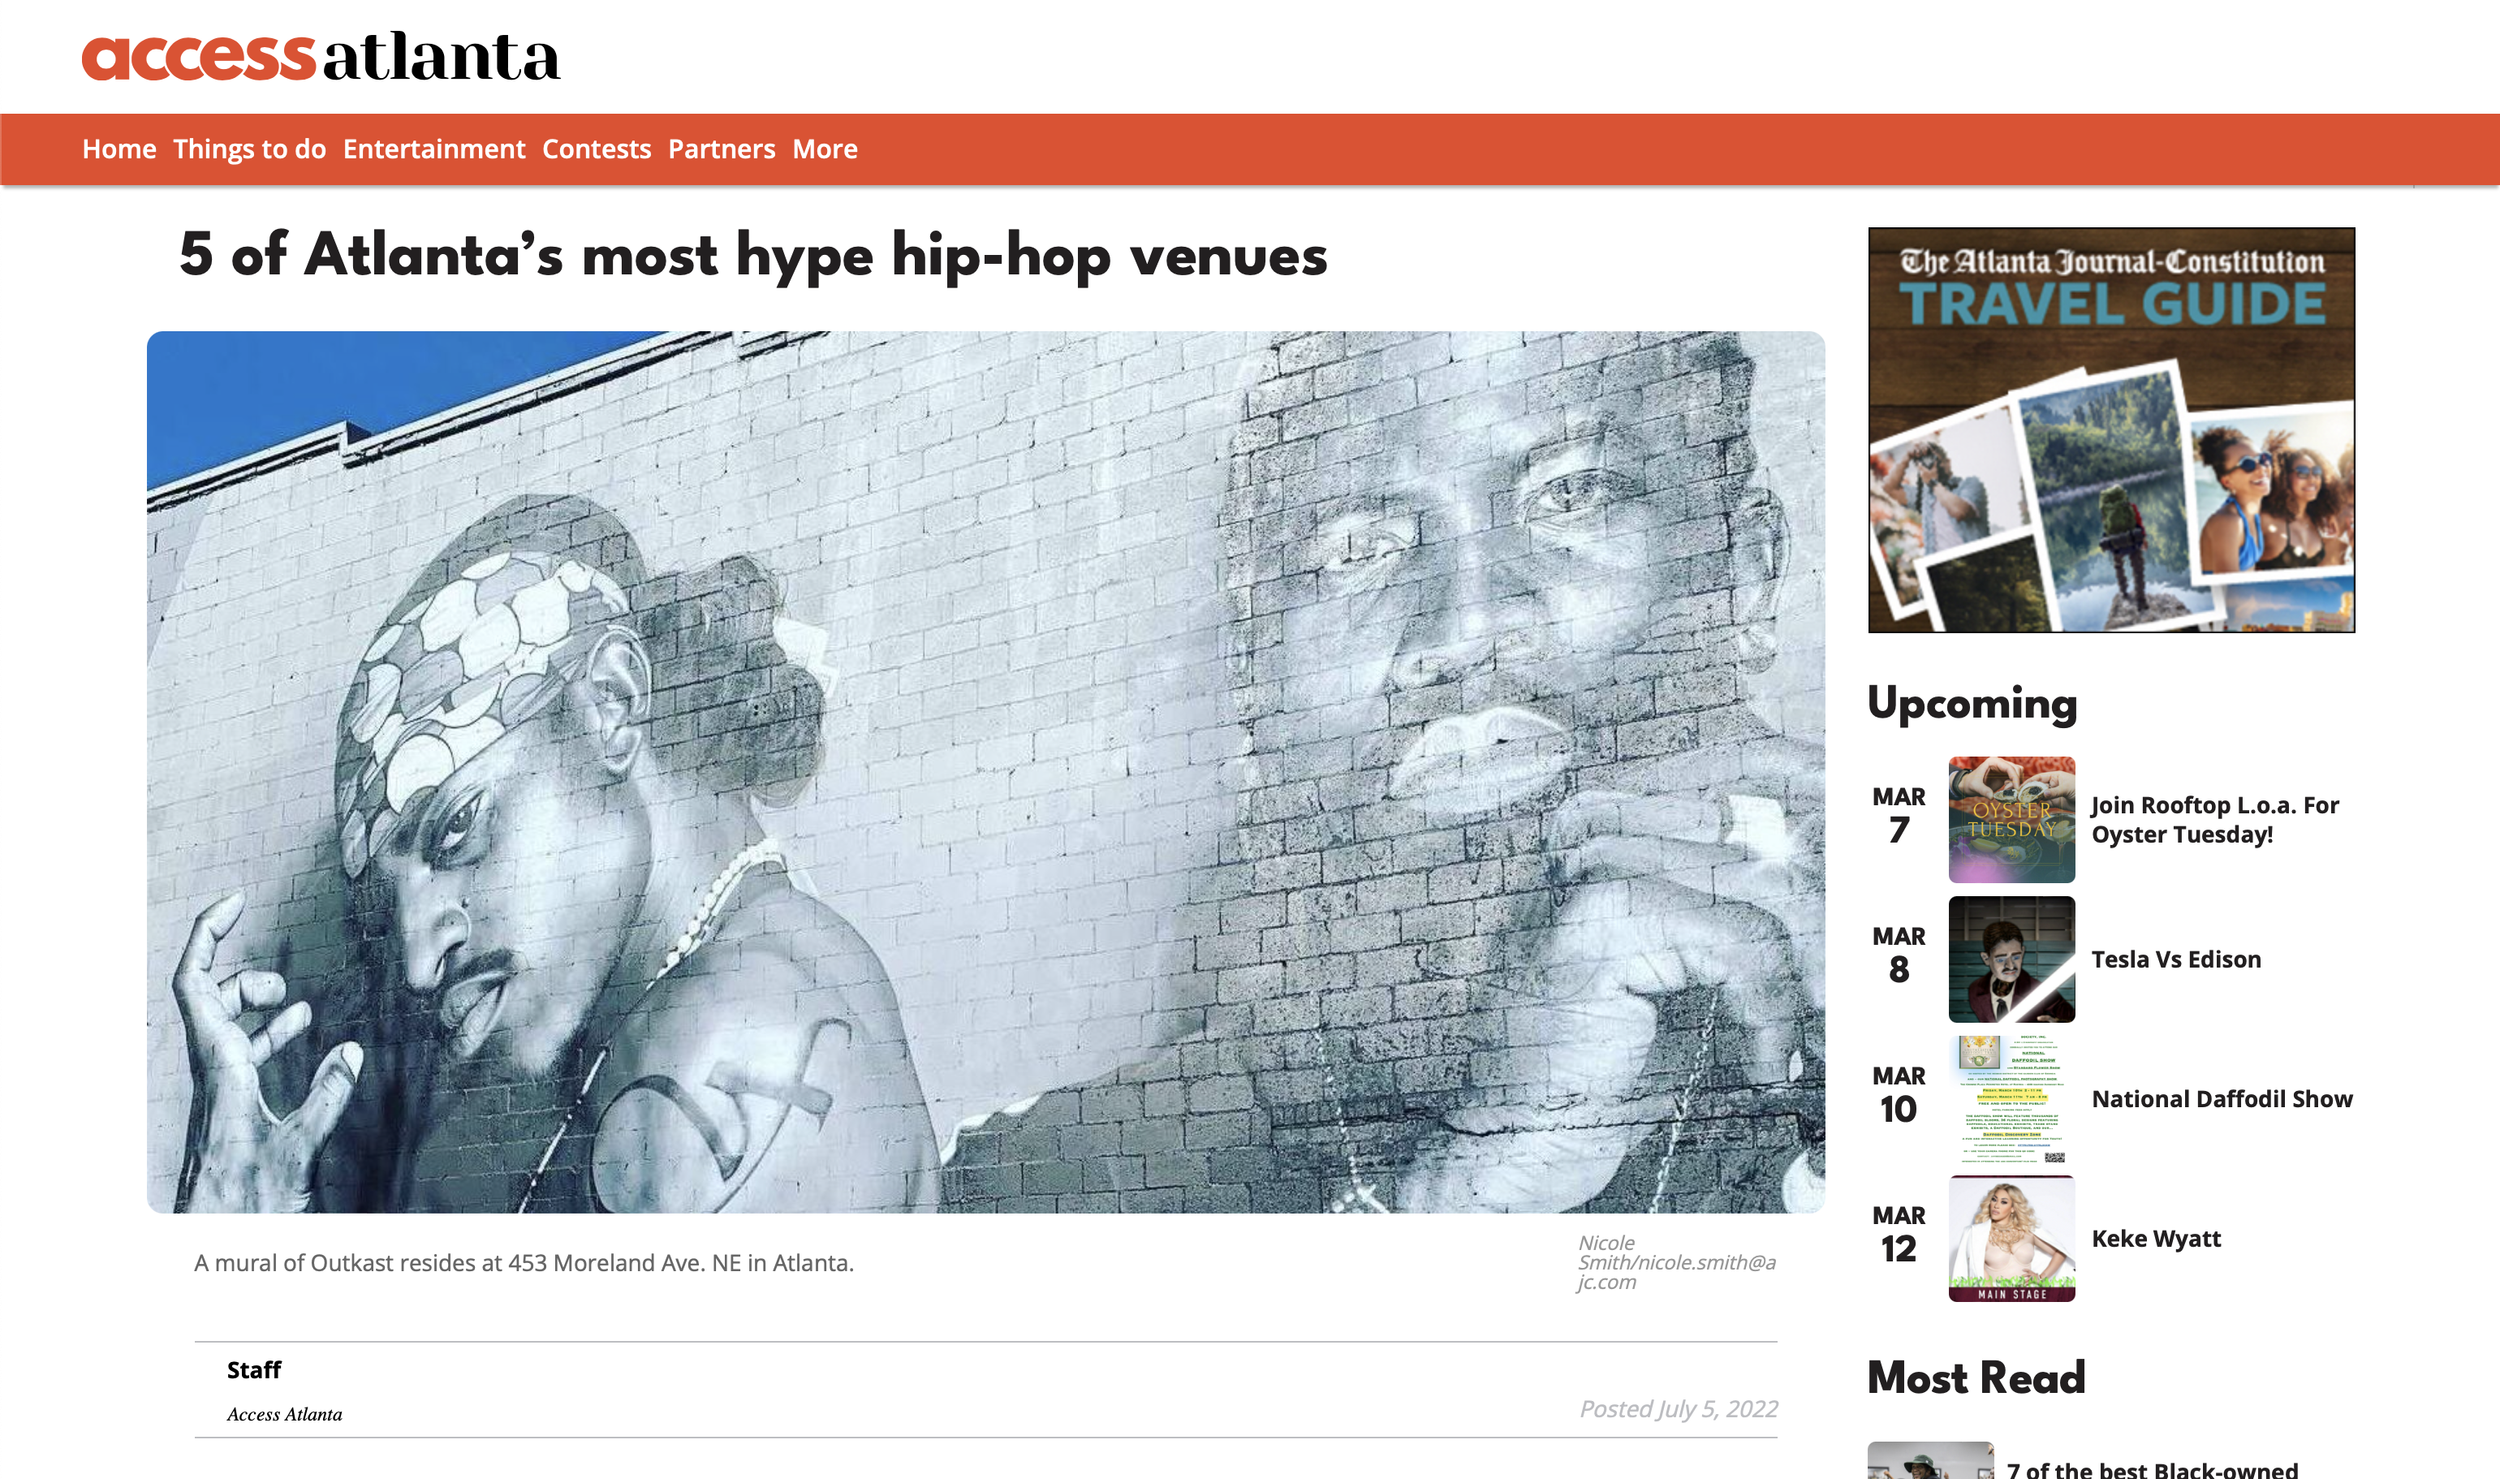 5 of Atlanta’s most hype hip-hop venues